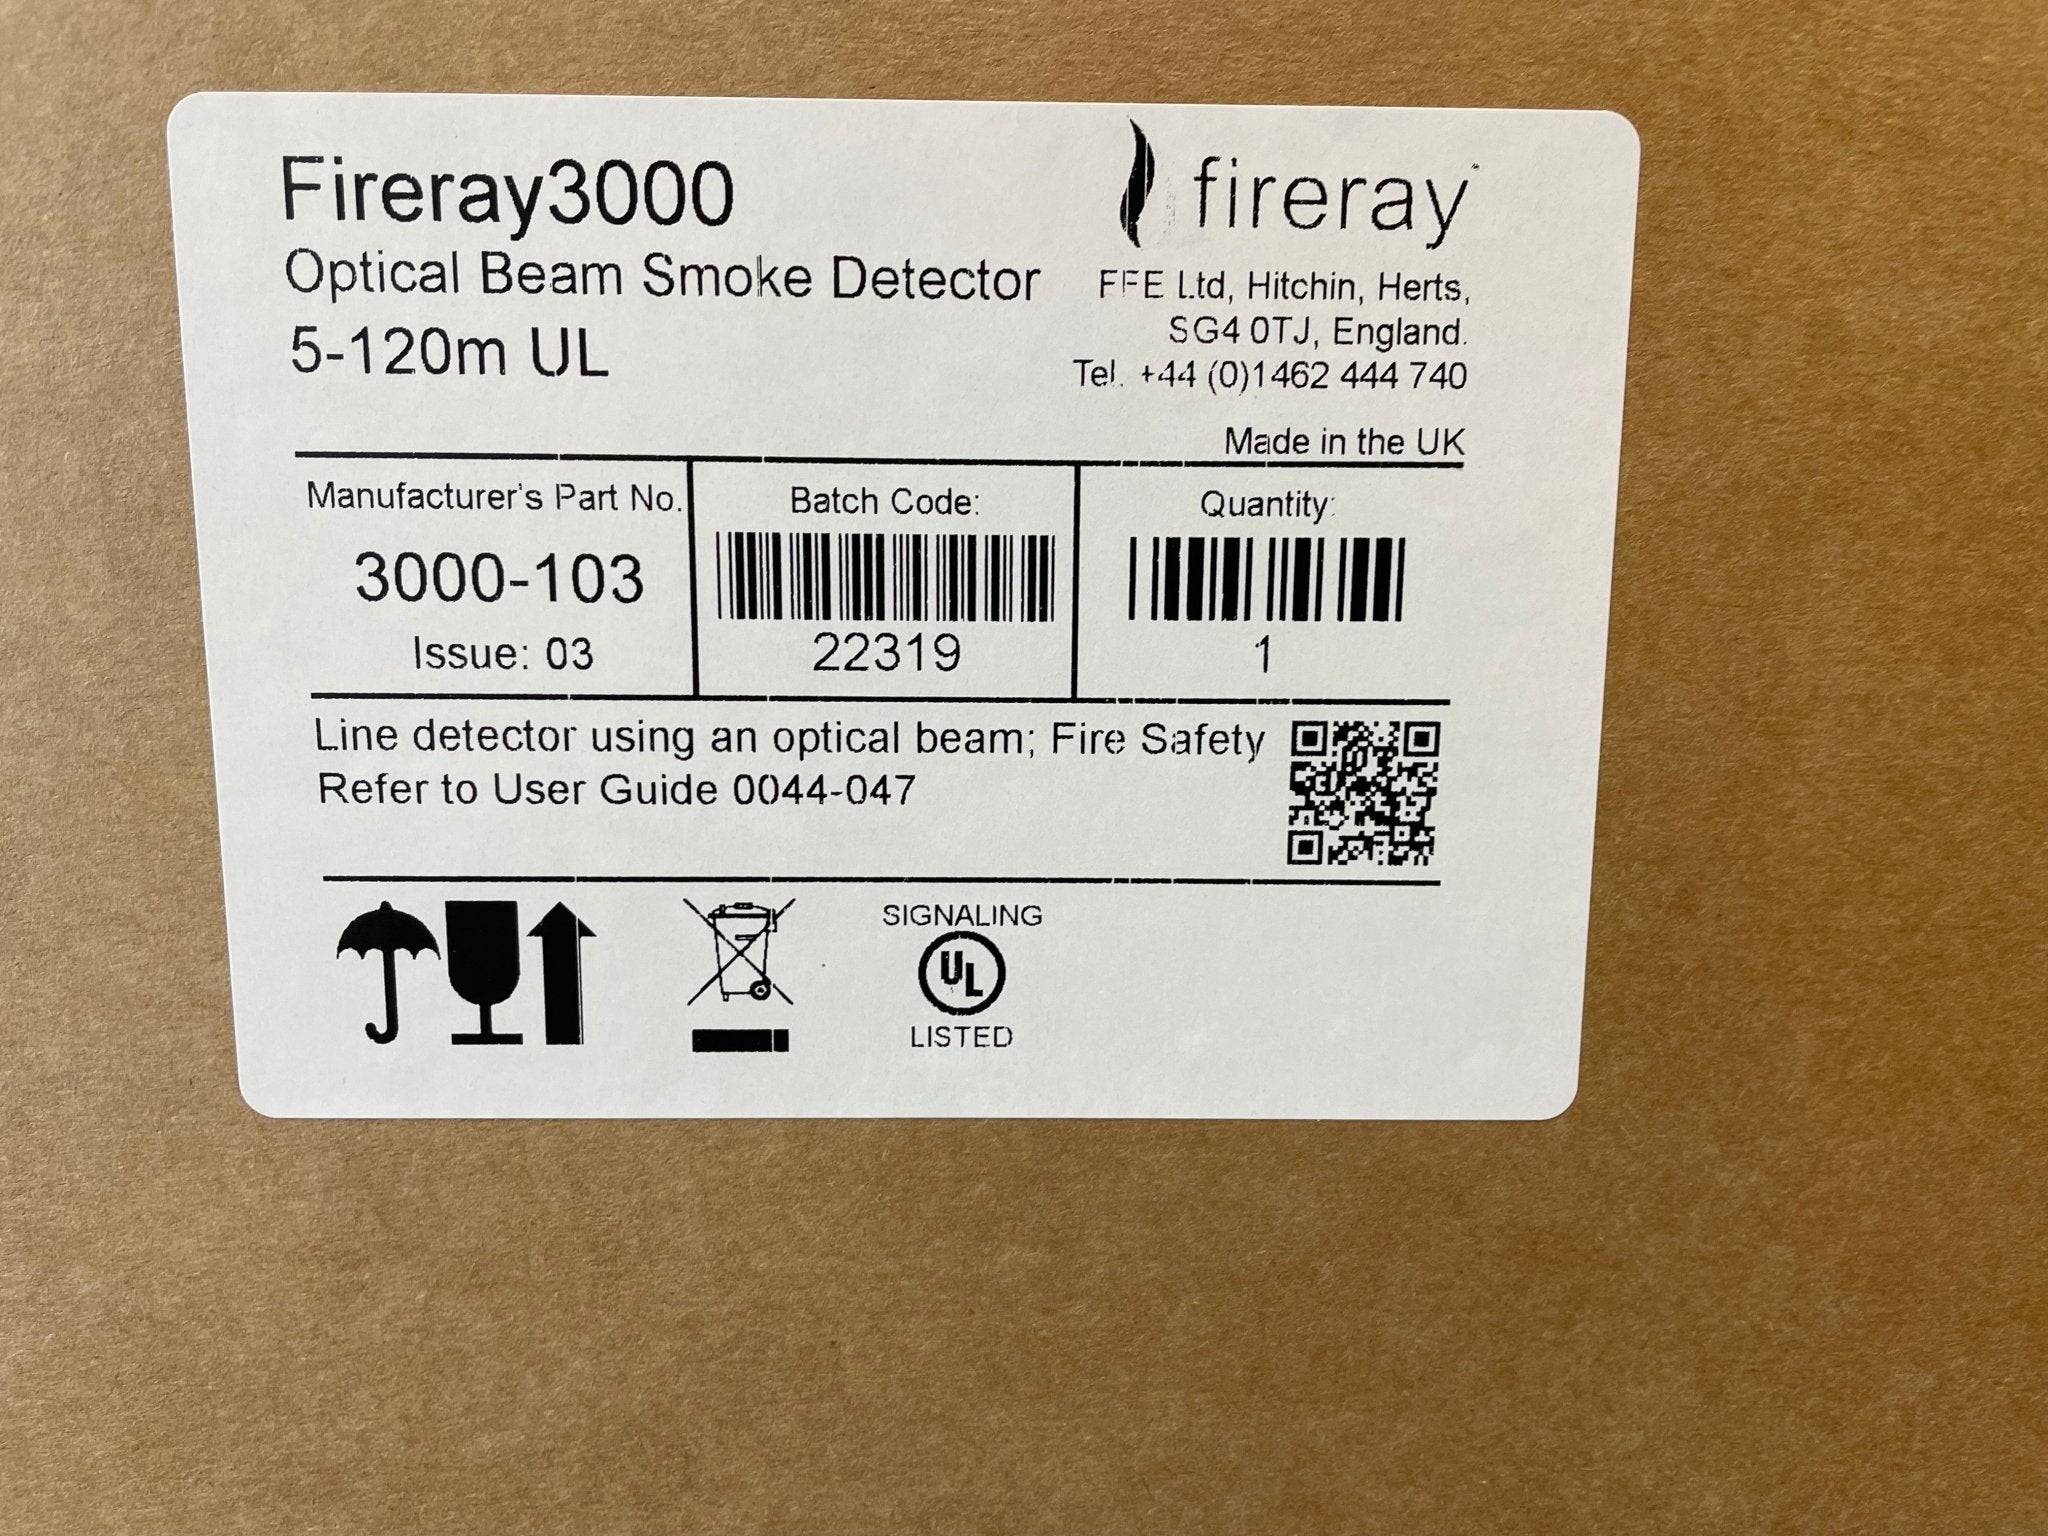 Fireray 3000-103 - The Fire Alarm Supplier